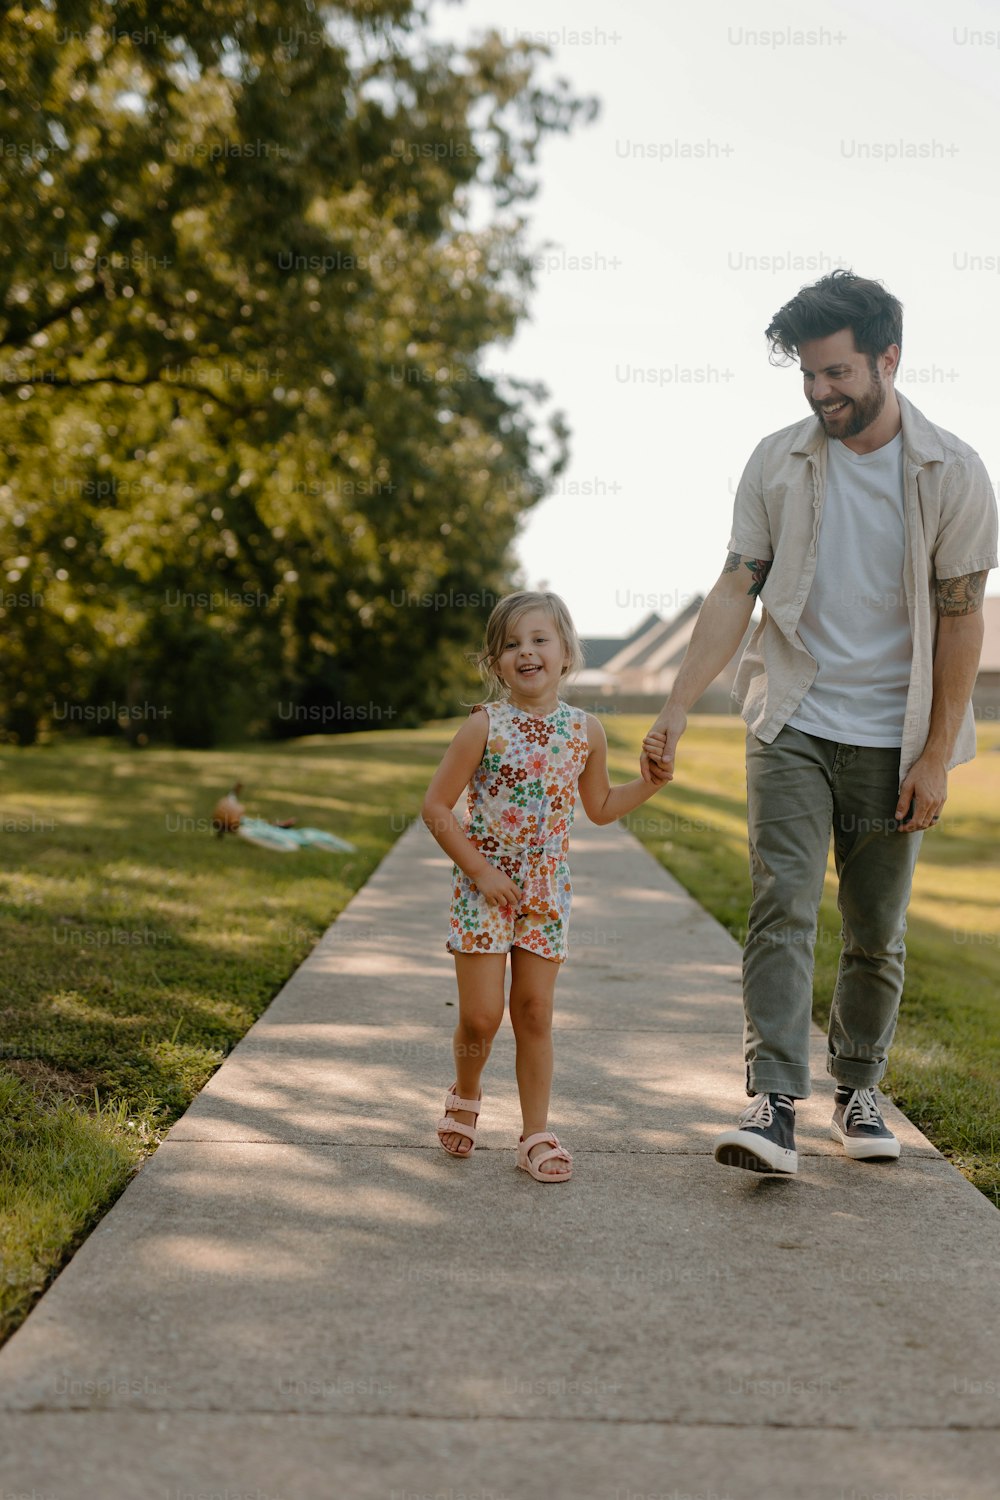 Un homme et une petite fille marchant sur un trottoir